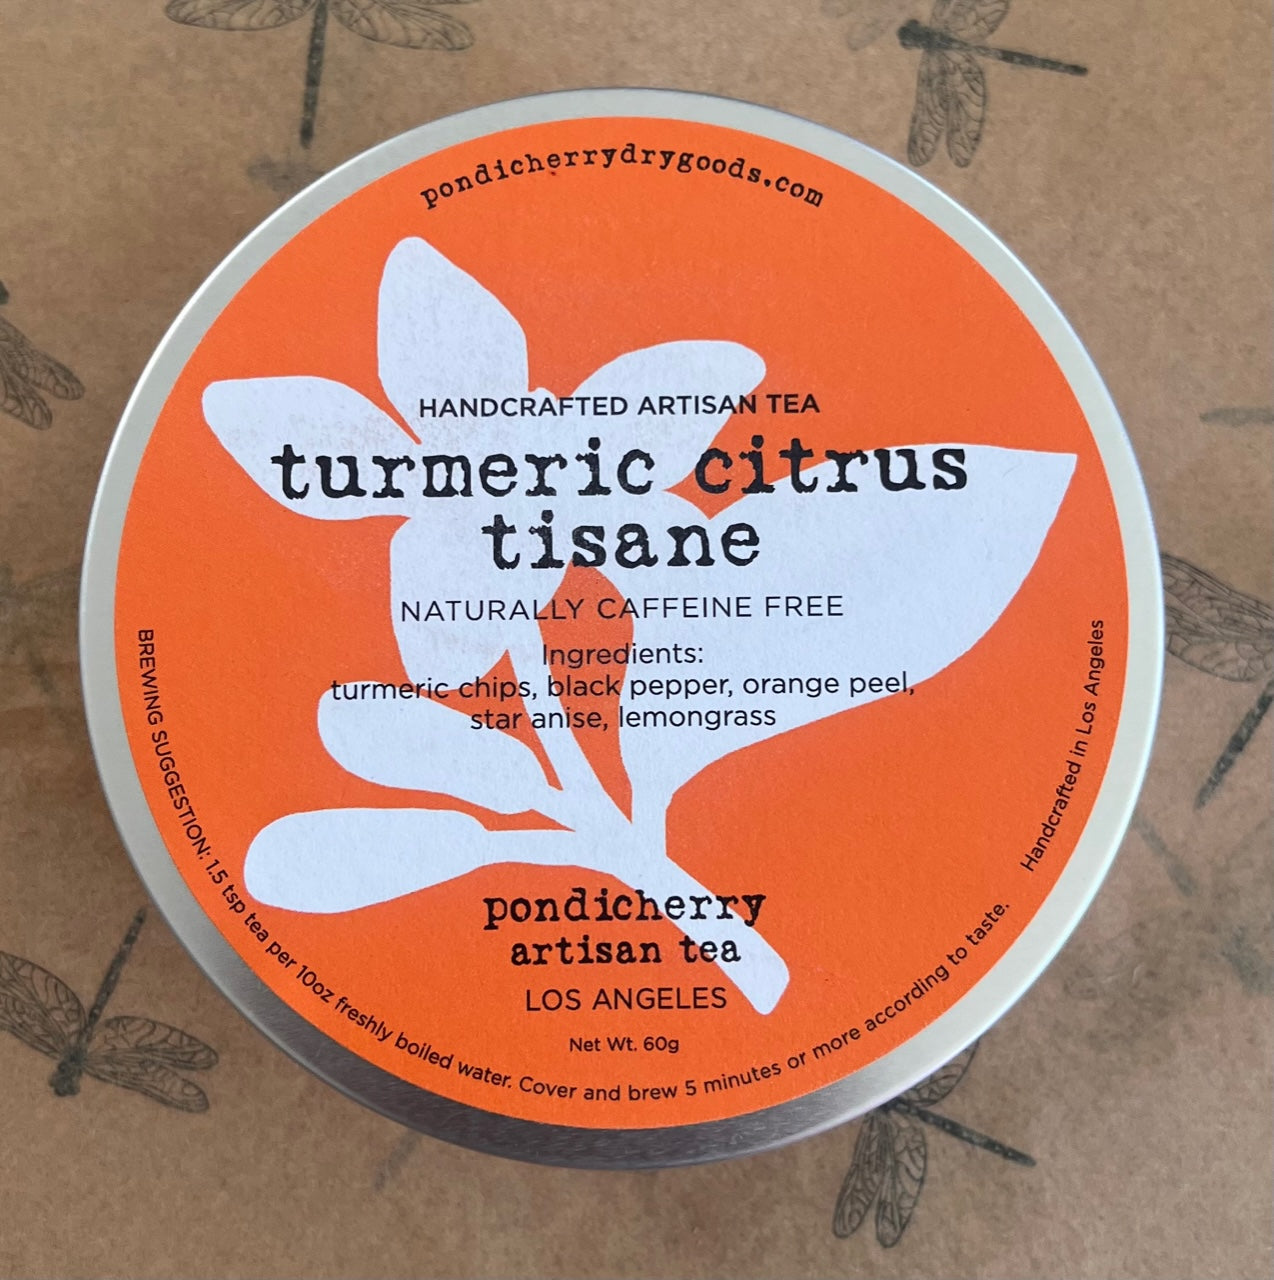 Turmeric Citrus Tisane - naturally caffeine free